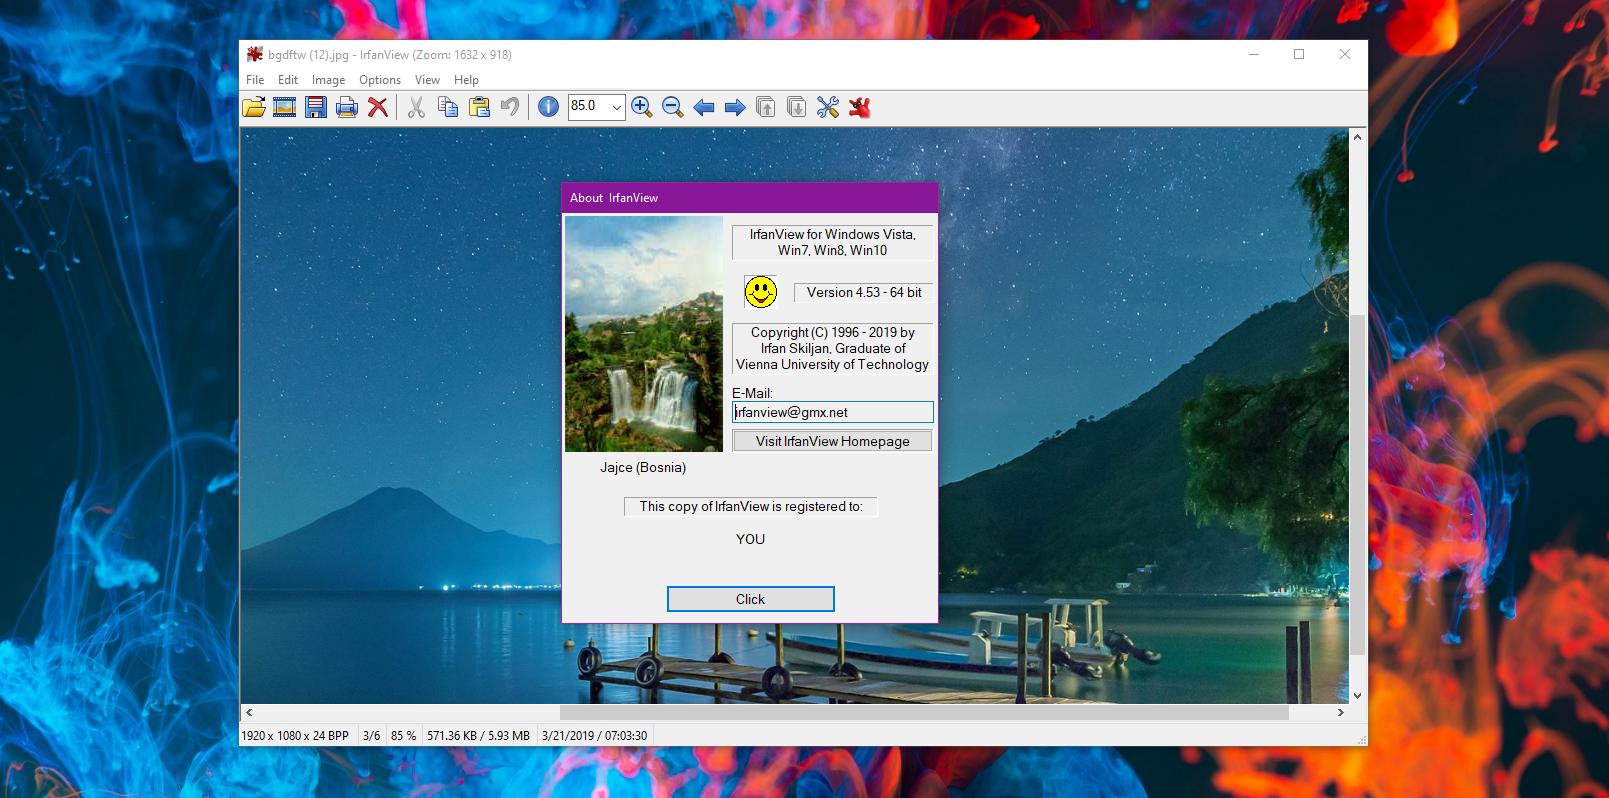 irfanview download windows 10